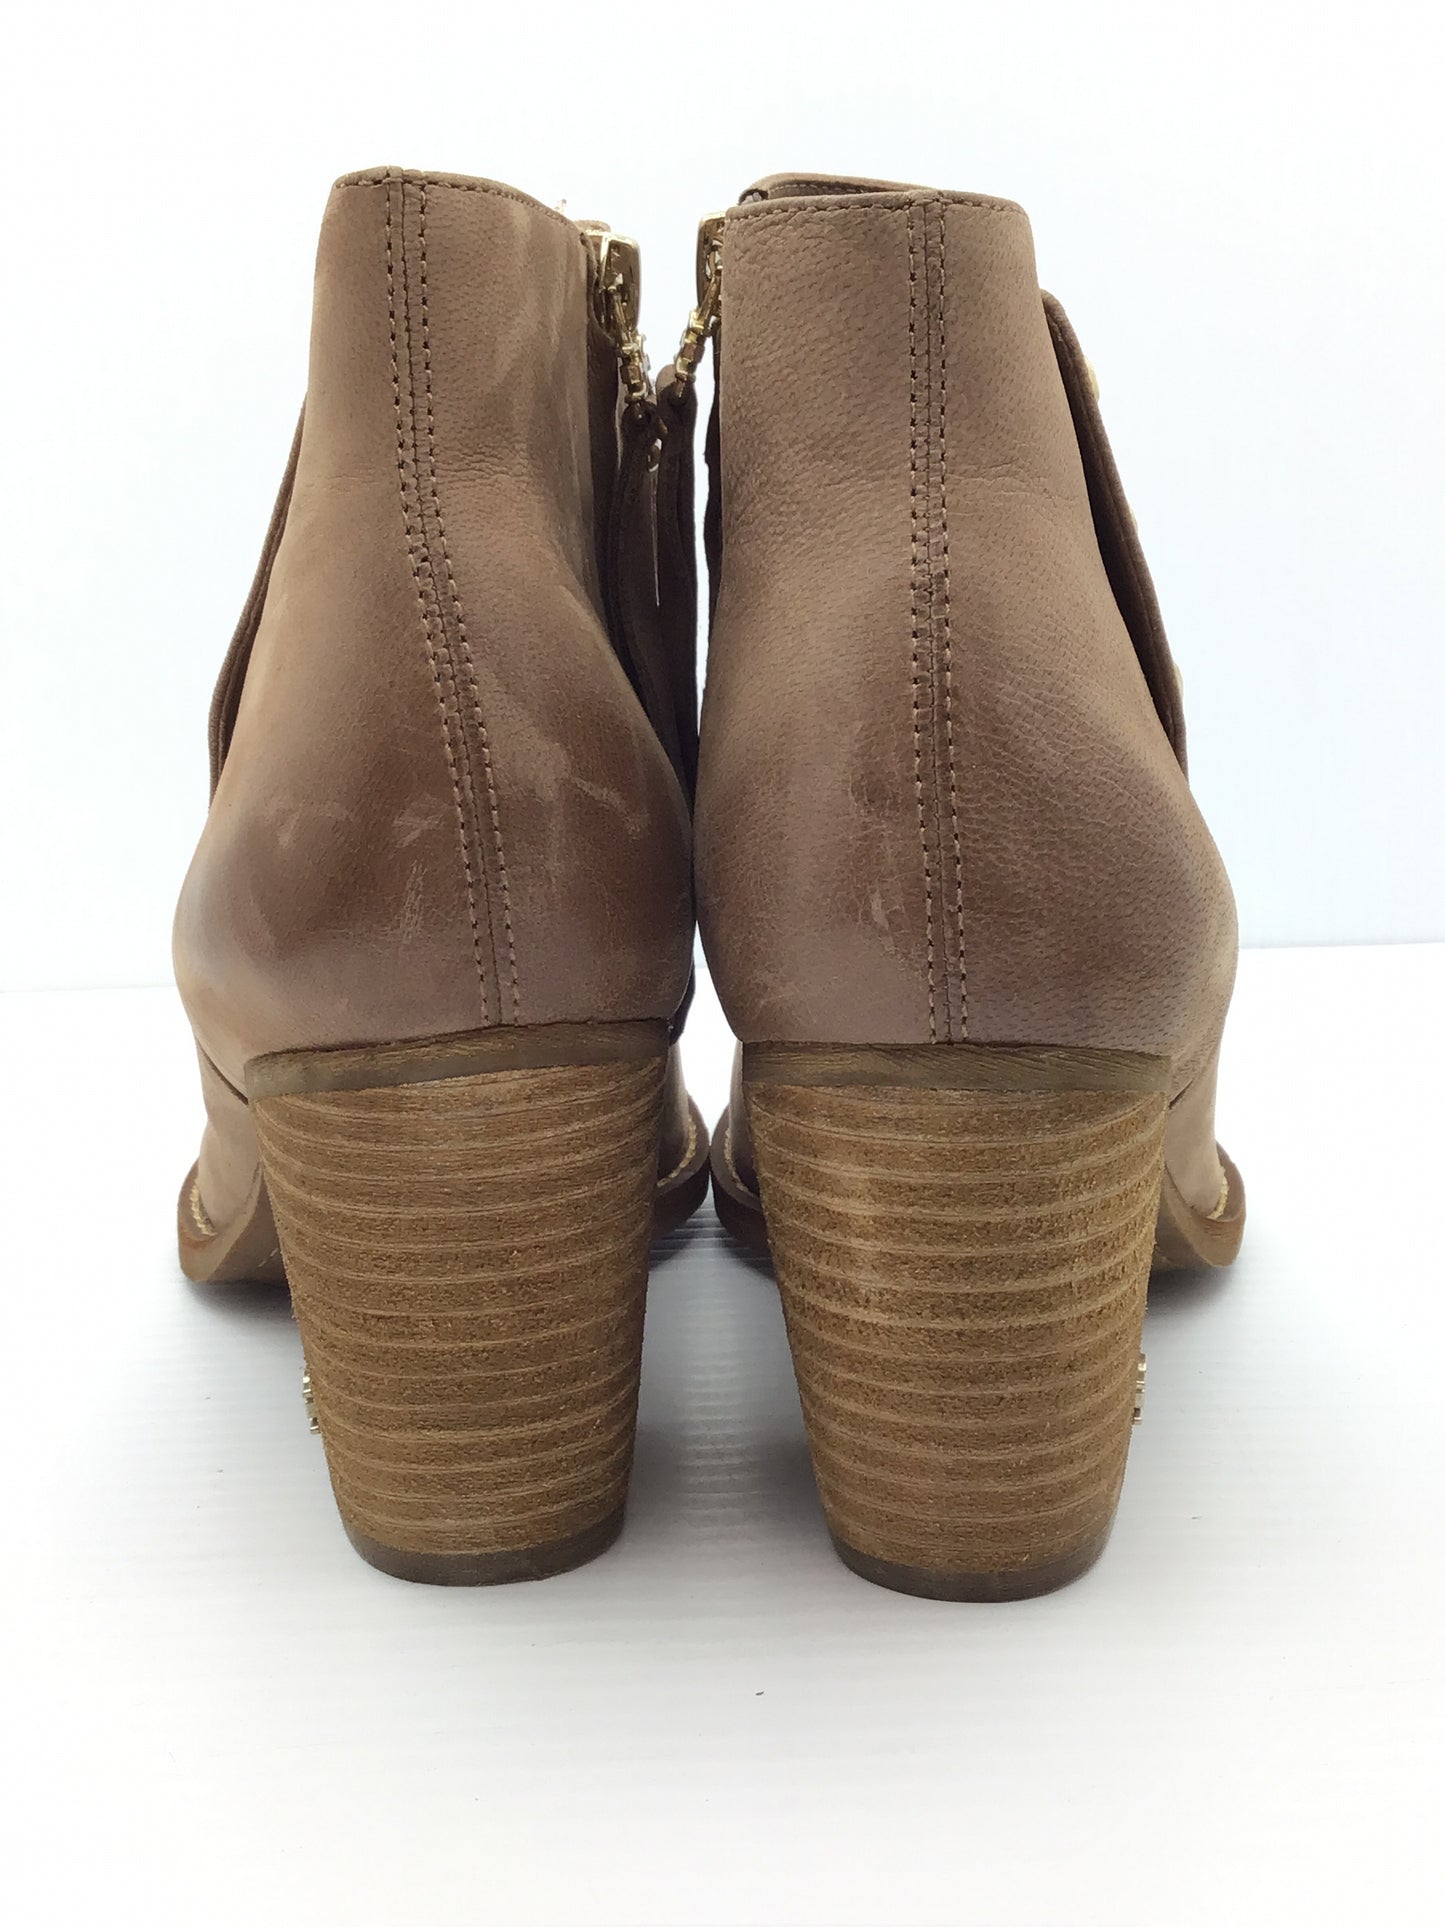 Boots Designer By Sam Edelman  Size: 9.5